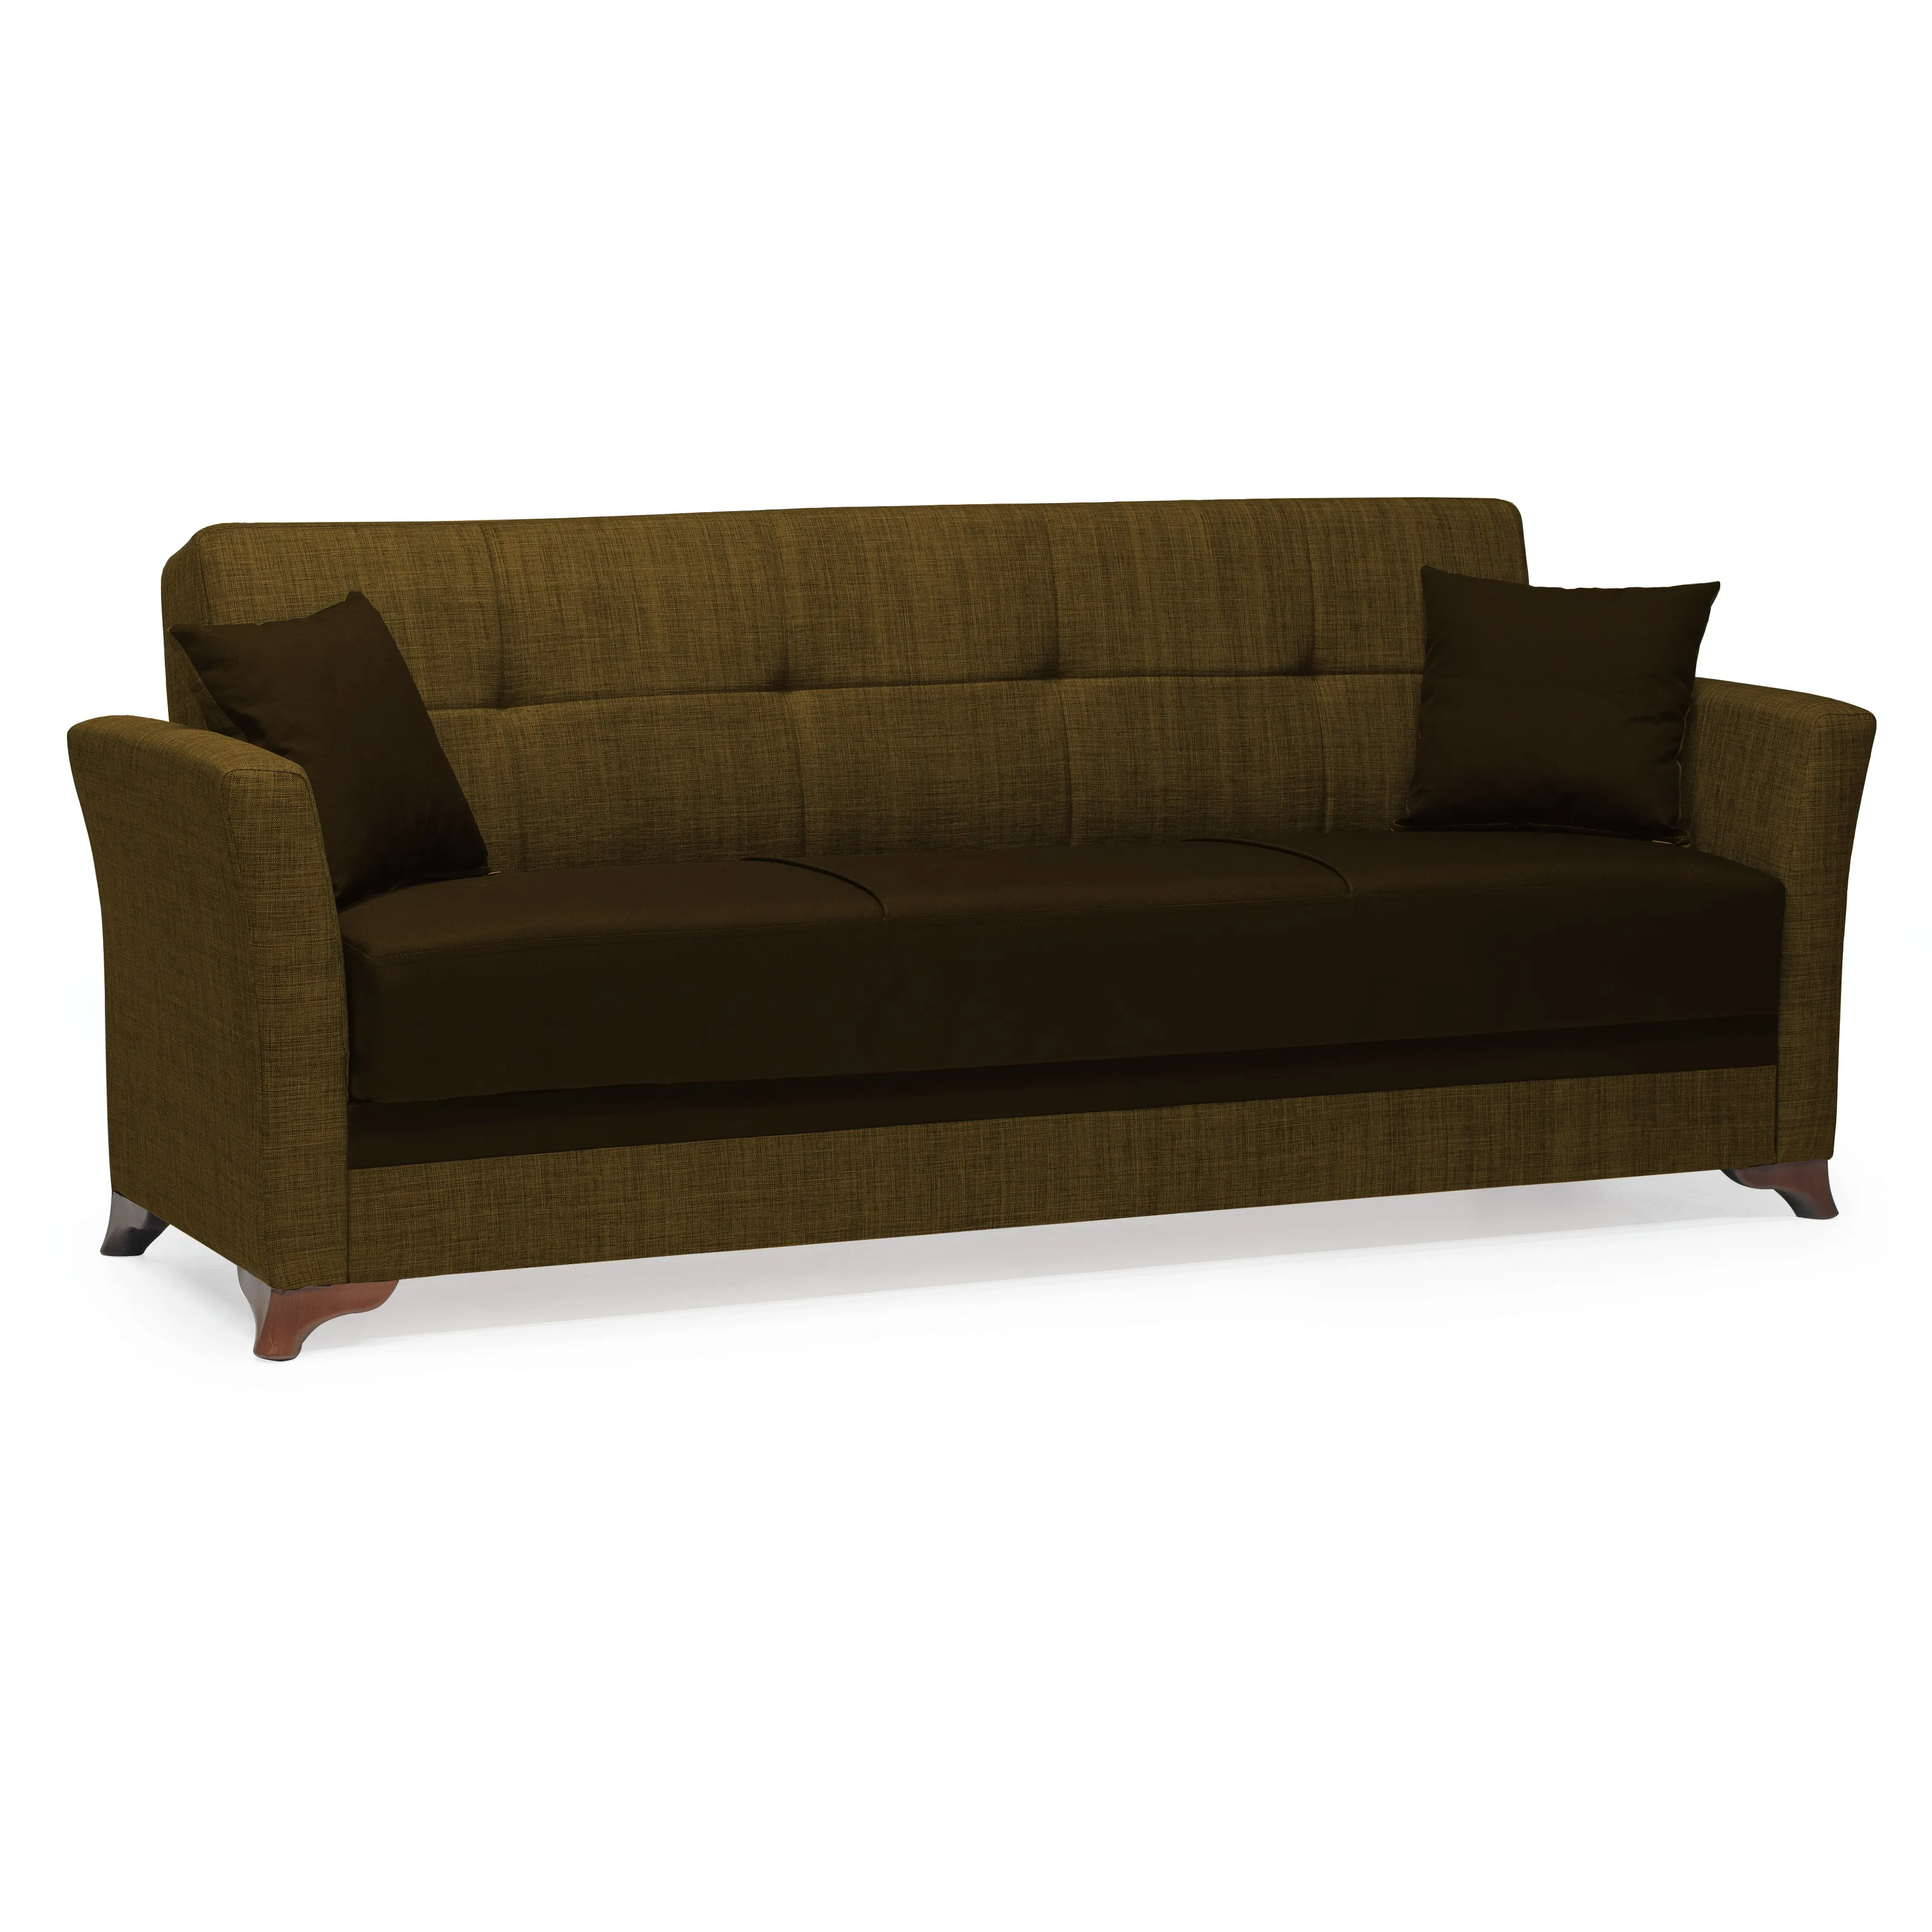 Mueble seccional para el hogar, mueble moderno y económico de alta calidad, color marrón, para sala de estar